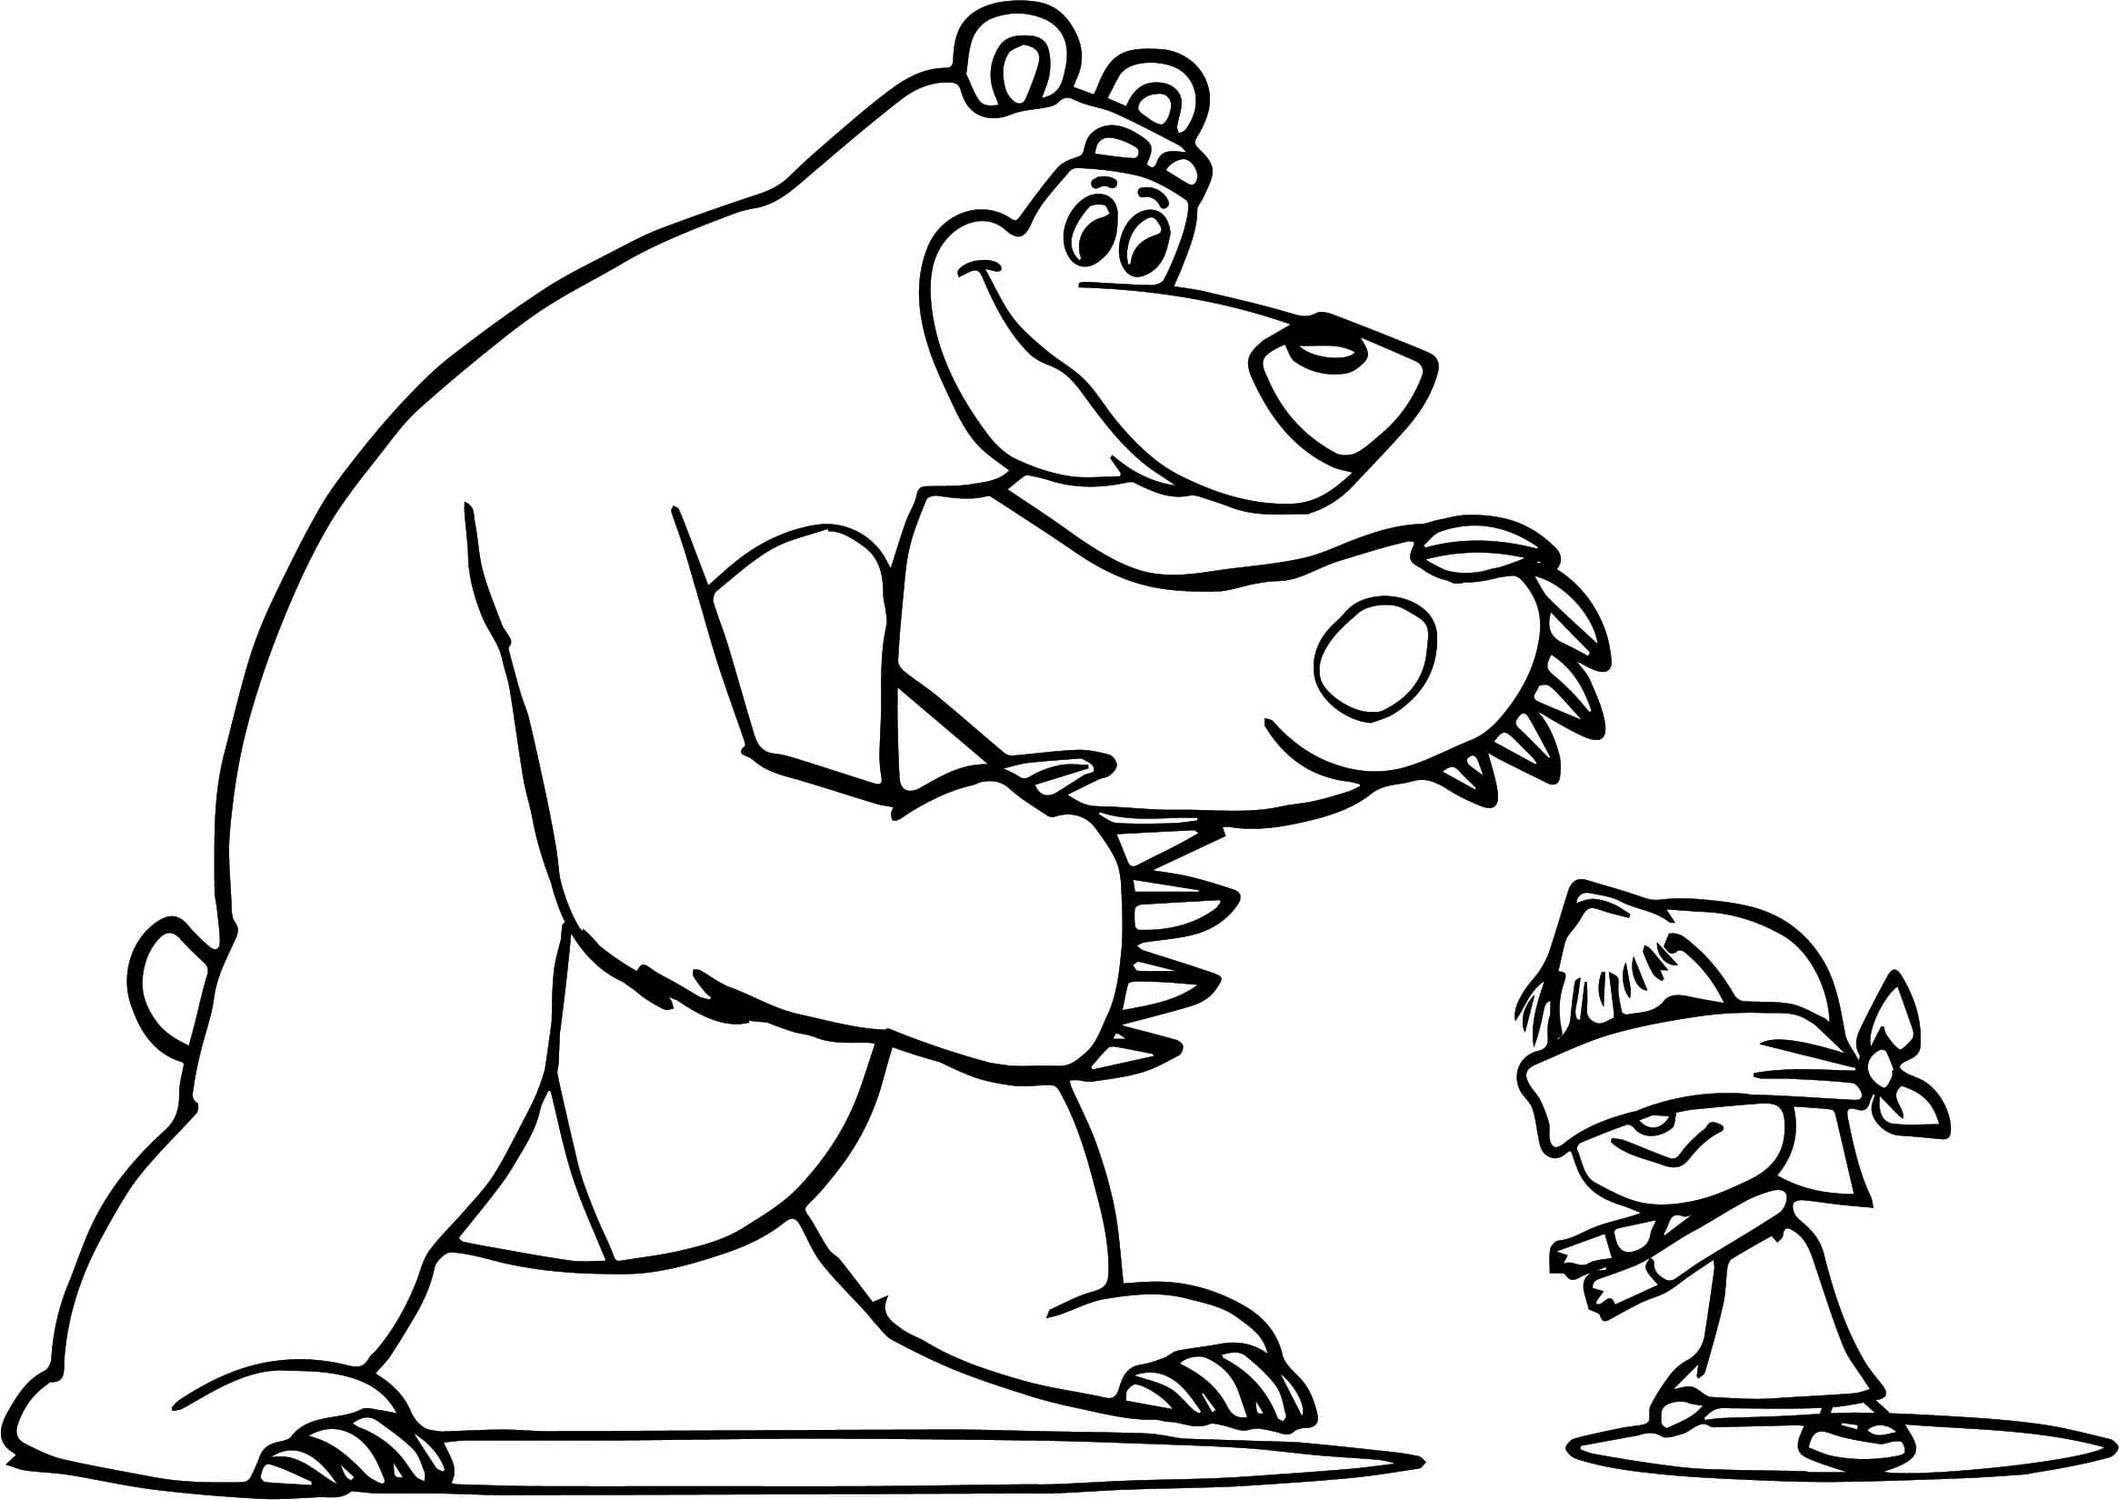 Ritning 32 av Masha och björnen för att skriva ut och färglägga